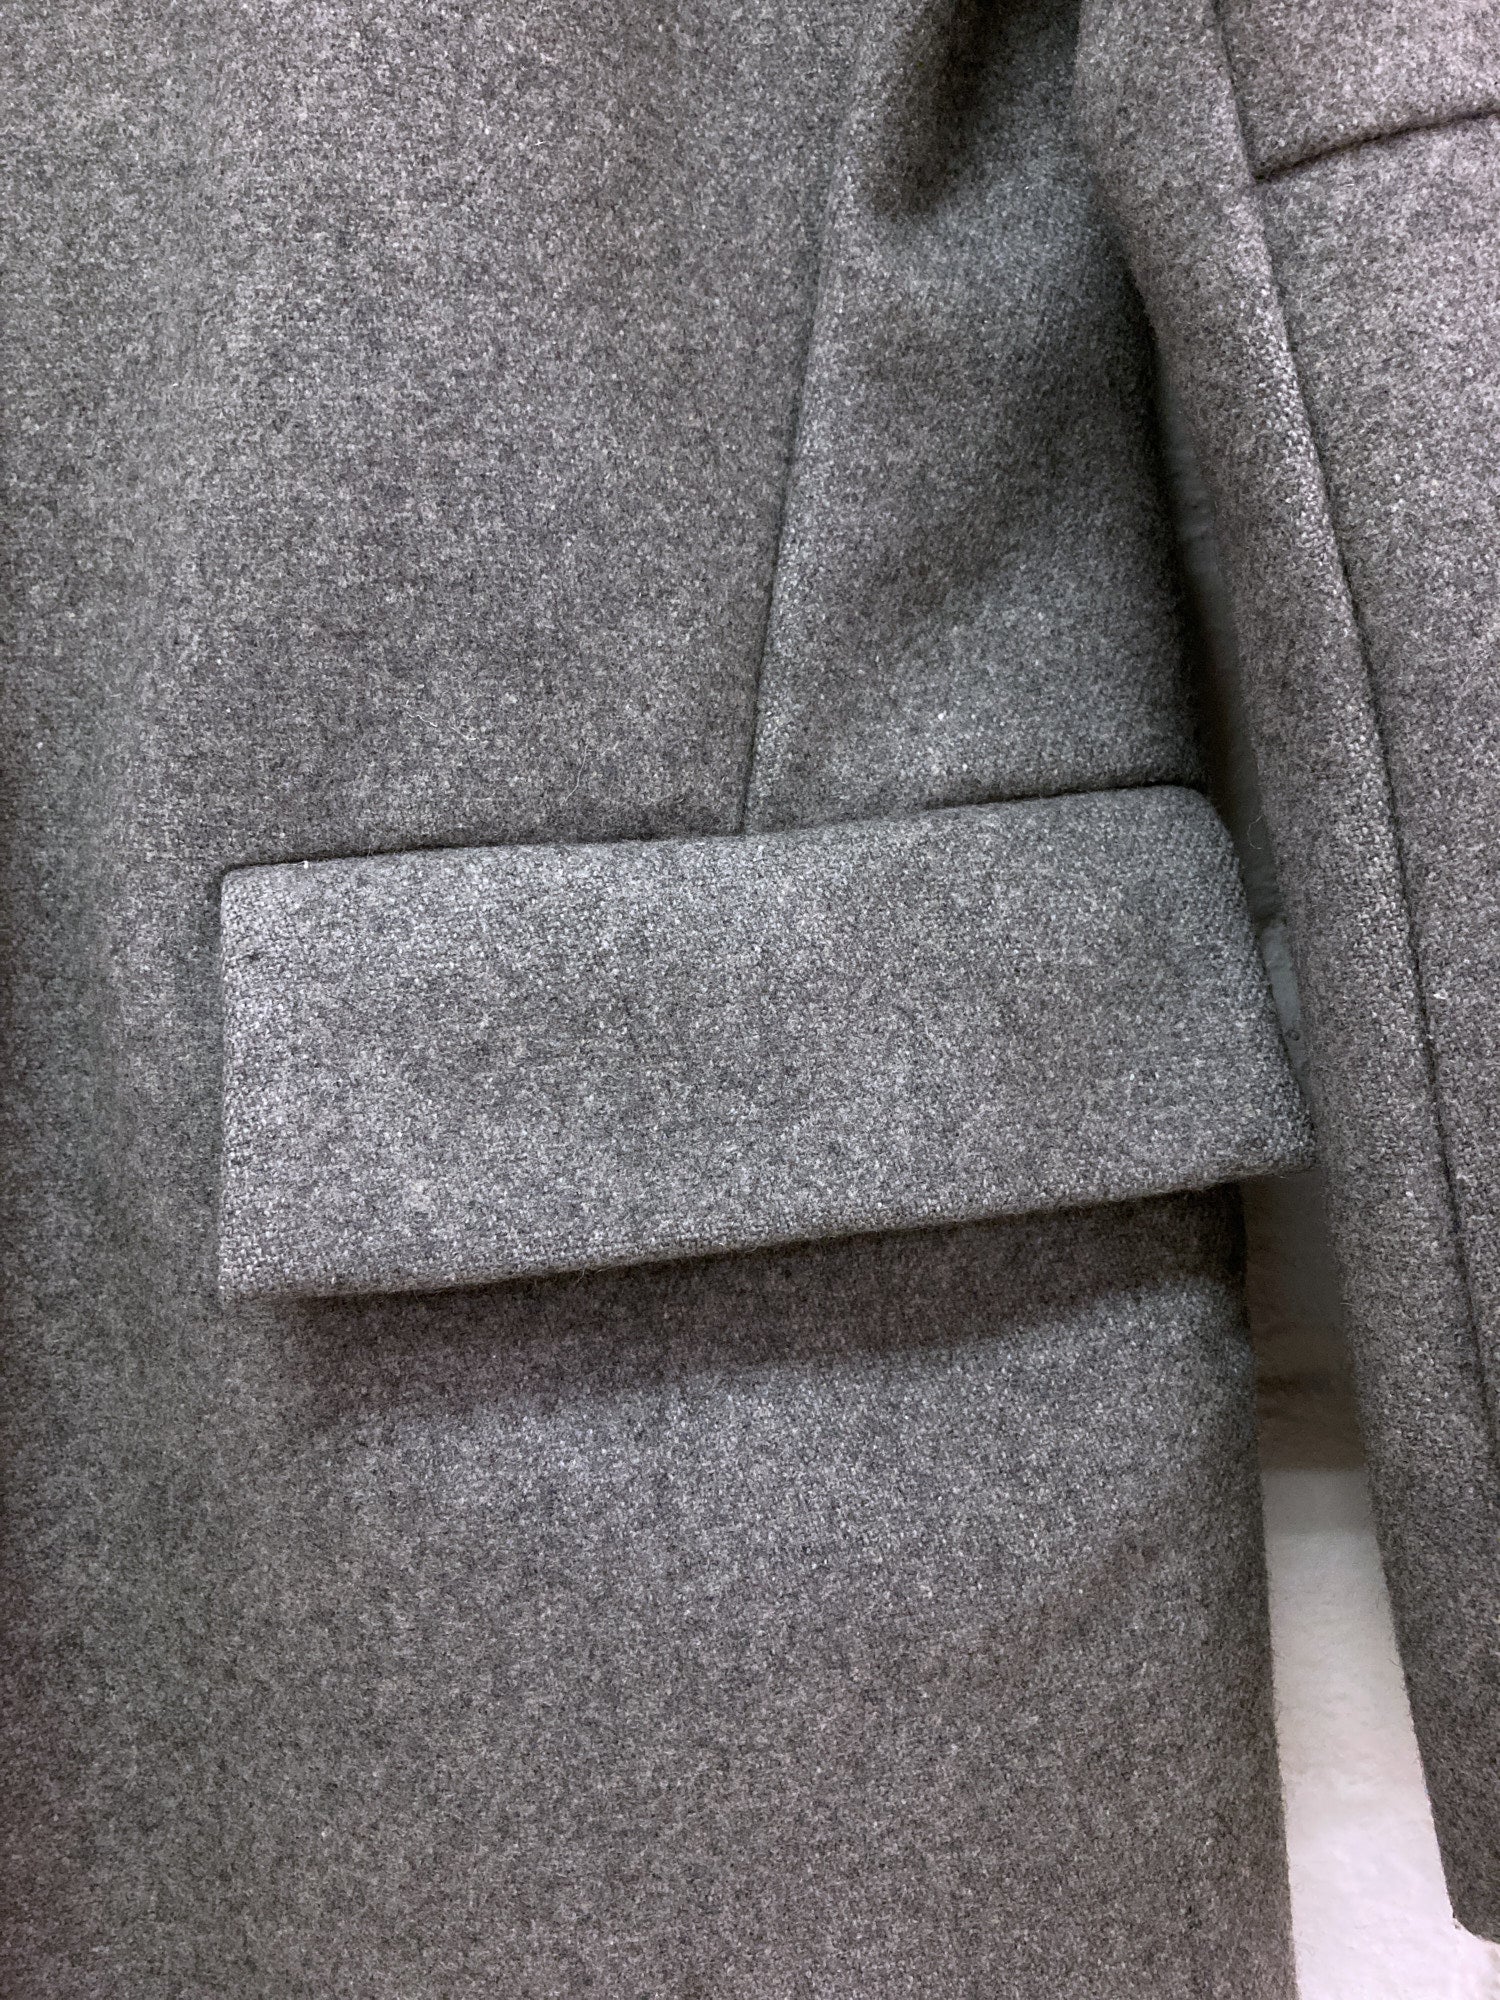 Maison Martin Margiela 6 1990s 2000s grey wool melton reversed placket coat - 42